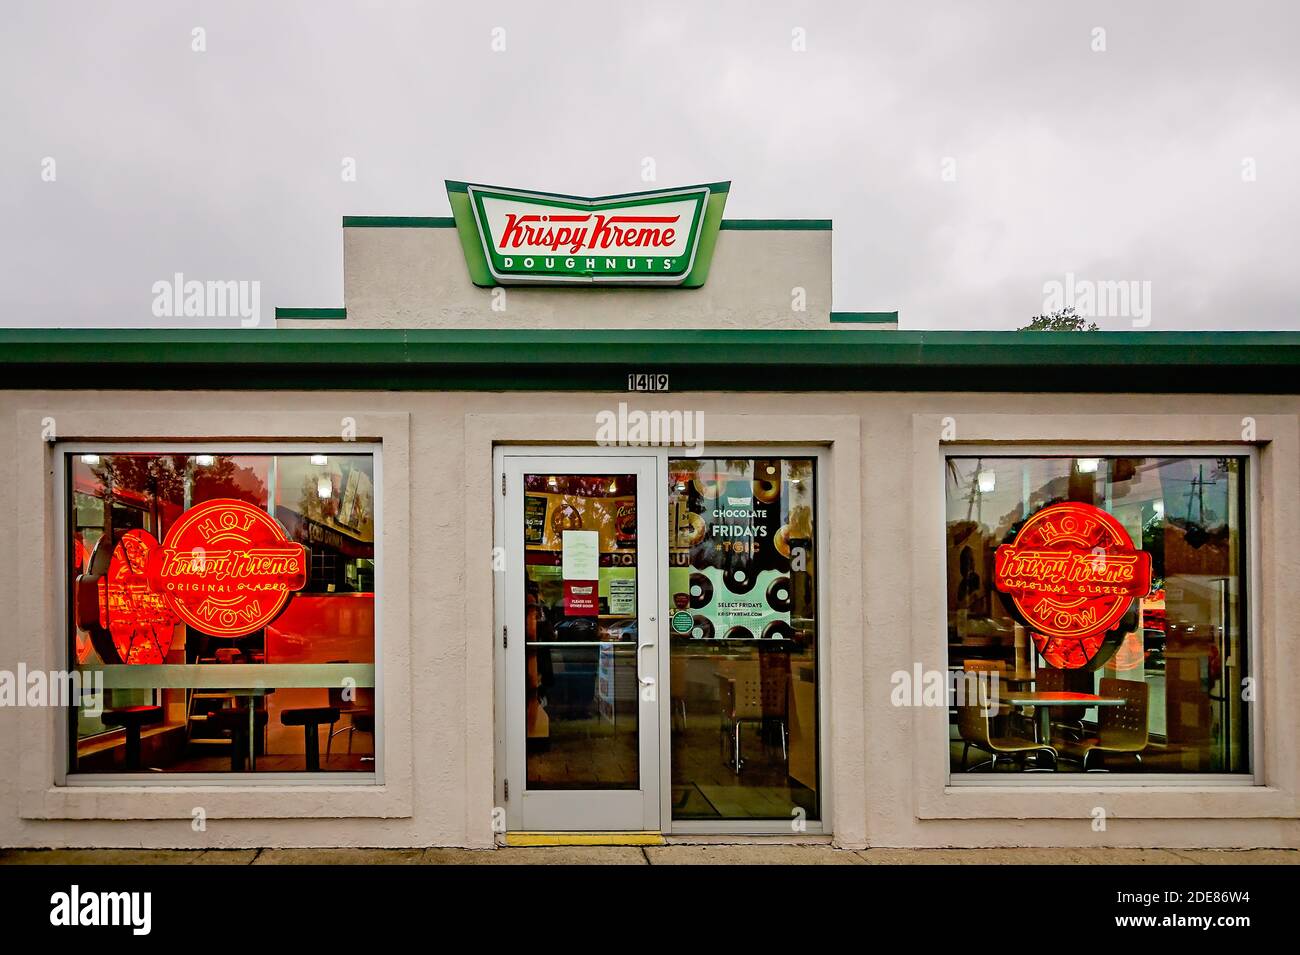 Krispy Kreme Donuts affiche le panneau Hot Now dans les fenêtres, 28 novembre 2020, à Ocean Springs, Mississippi. Banque D'Images